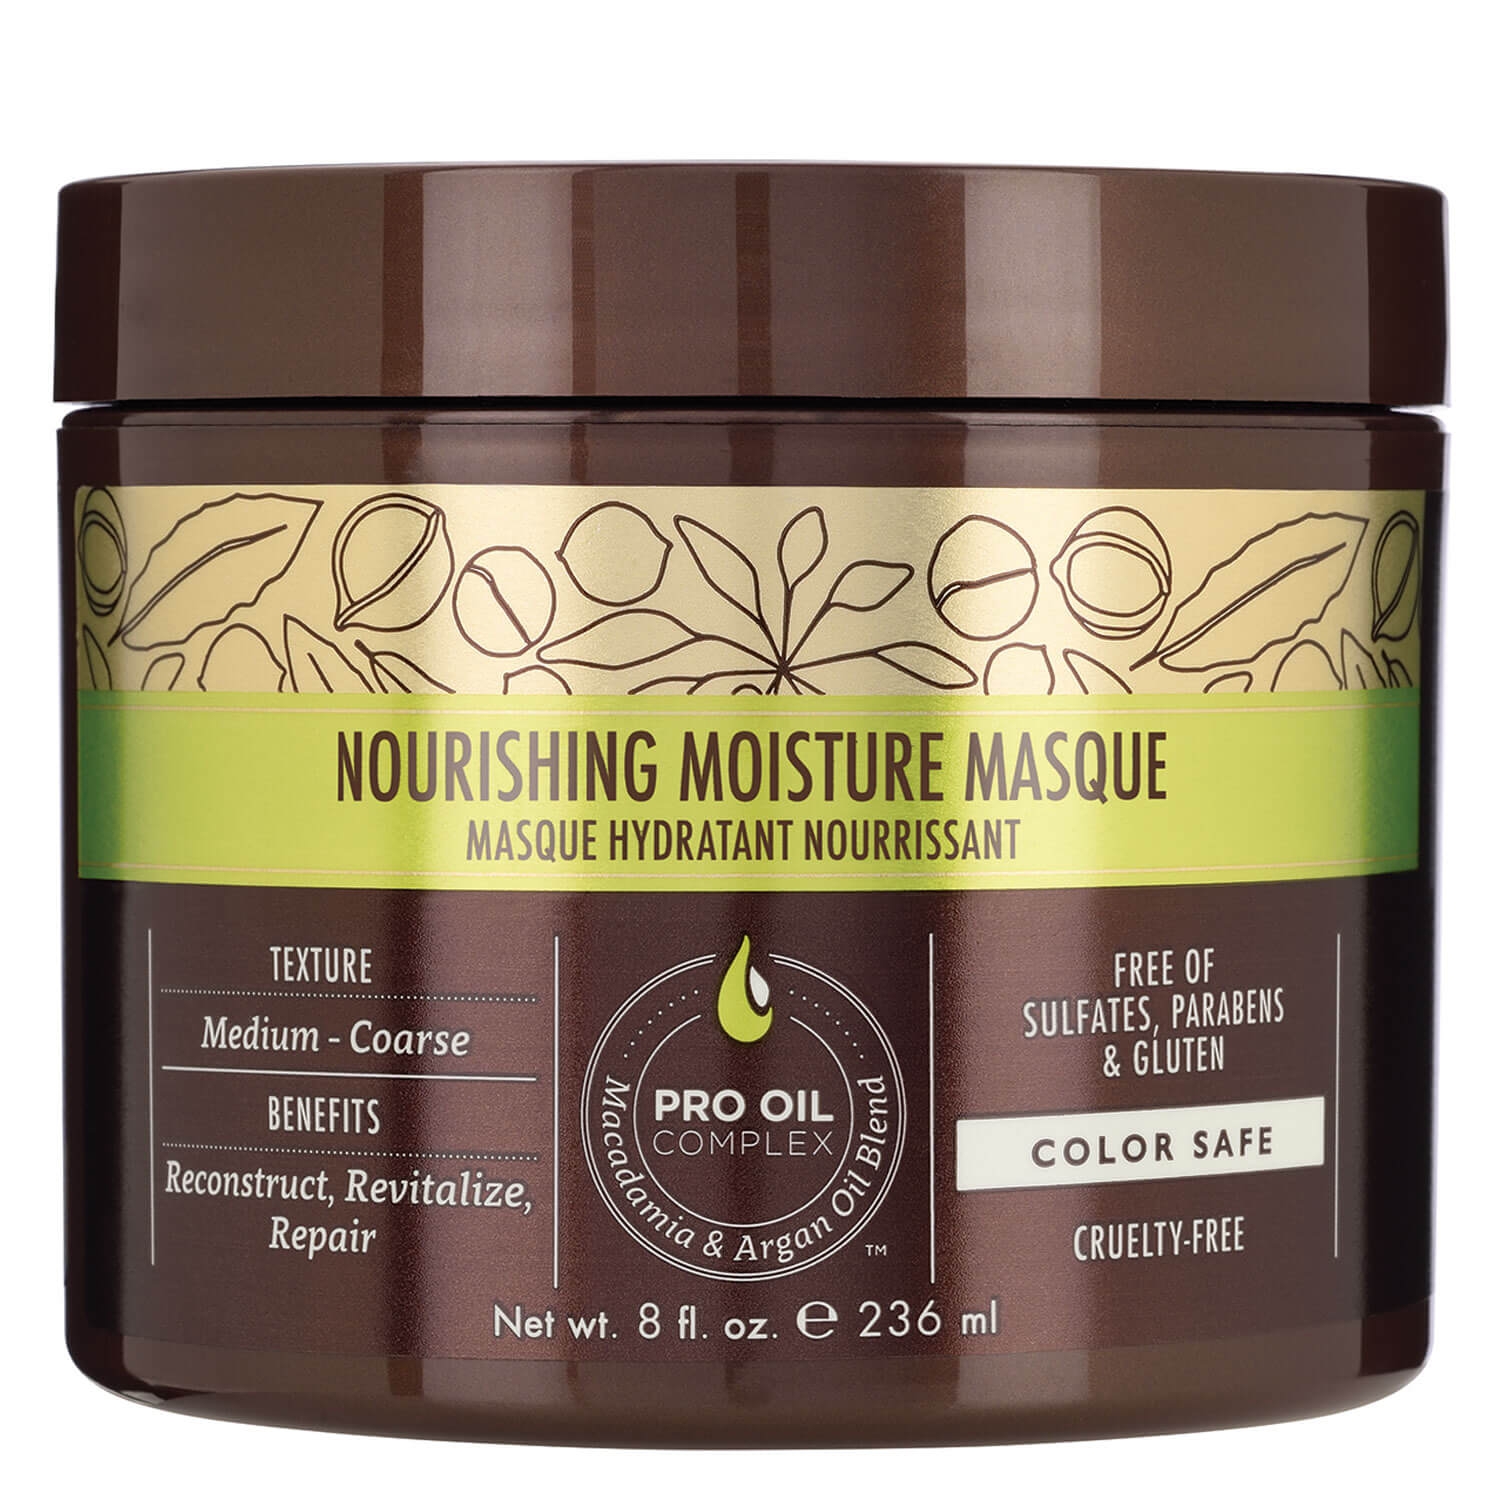 Produktbild von Macadamia - Nourishing Moisture Masque